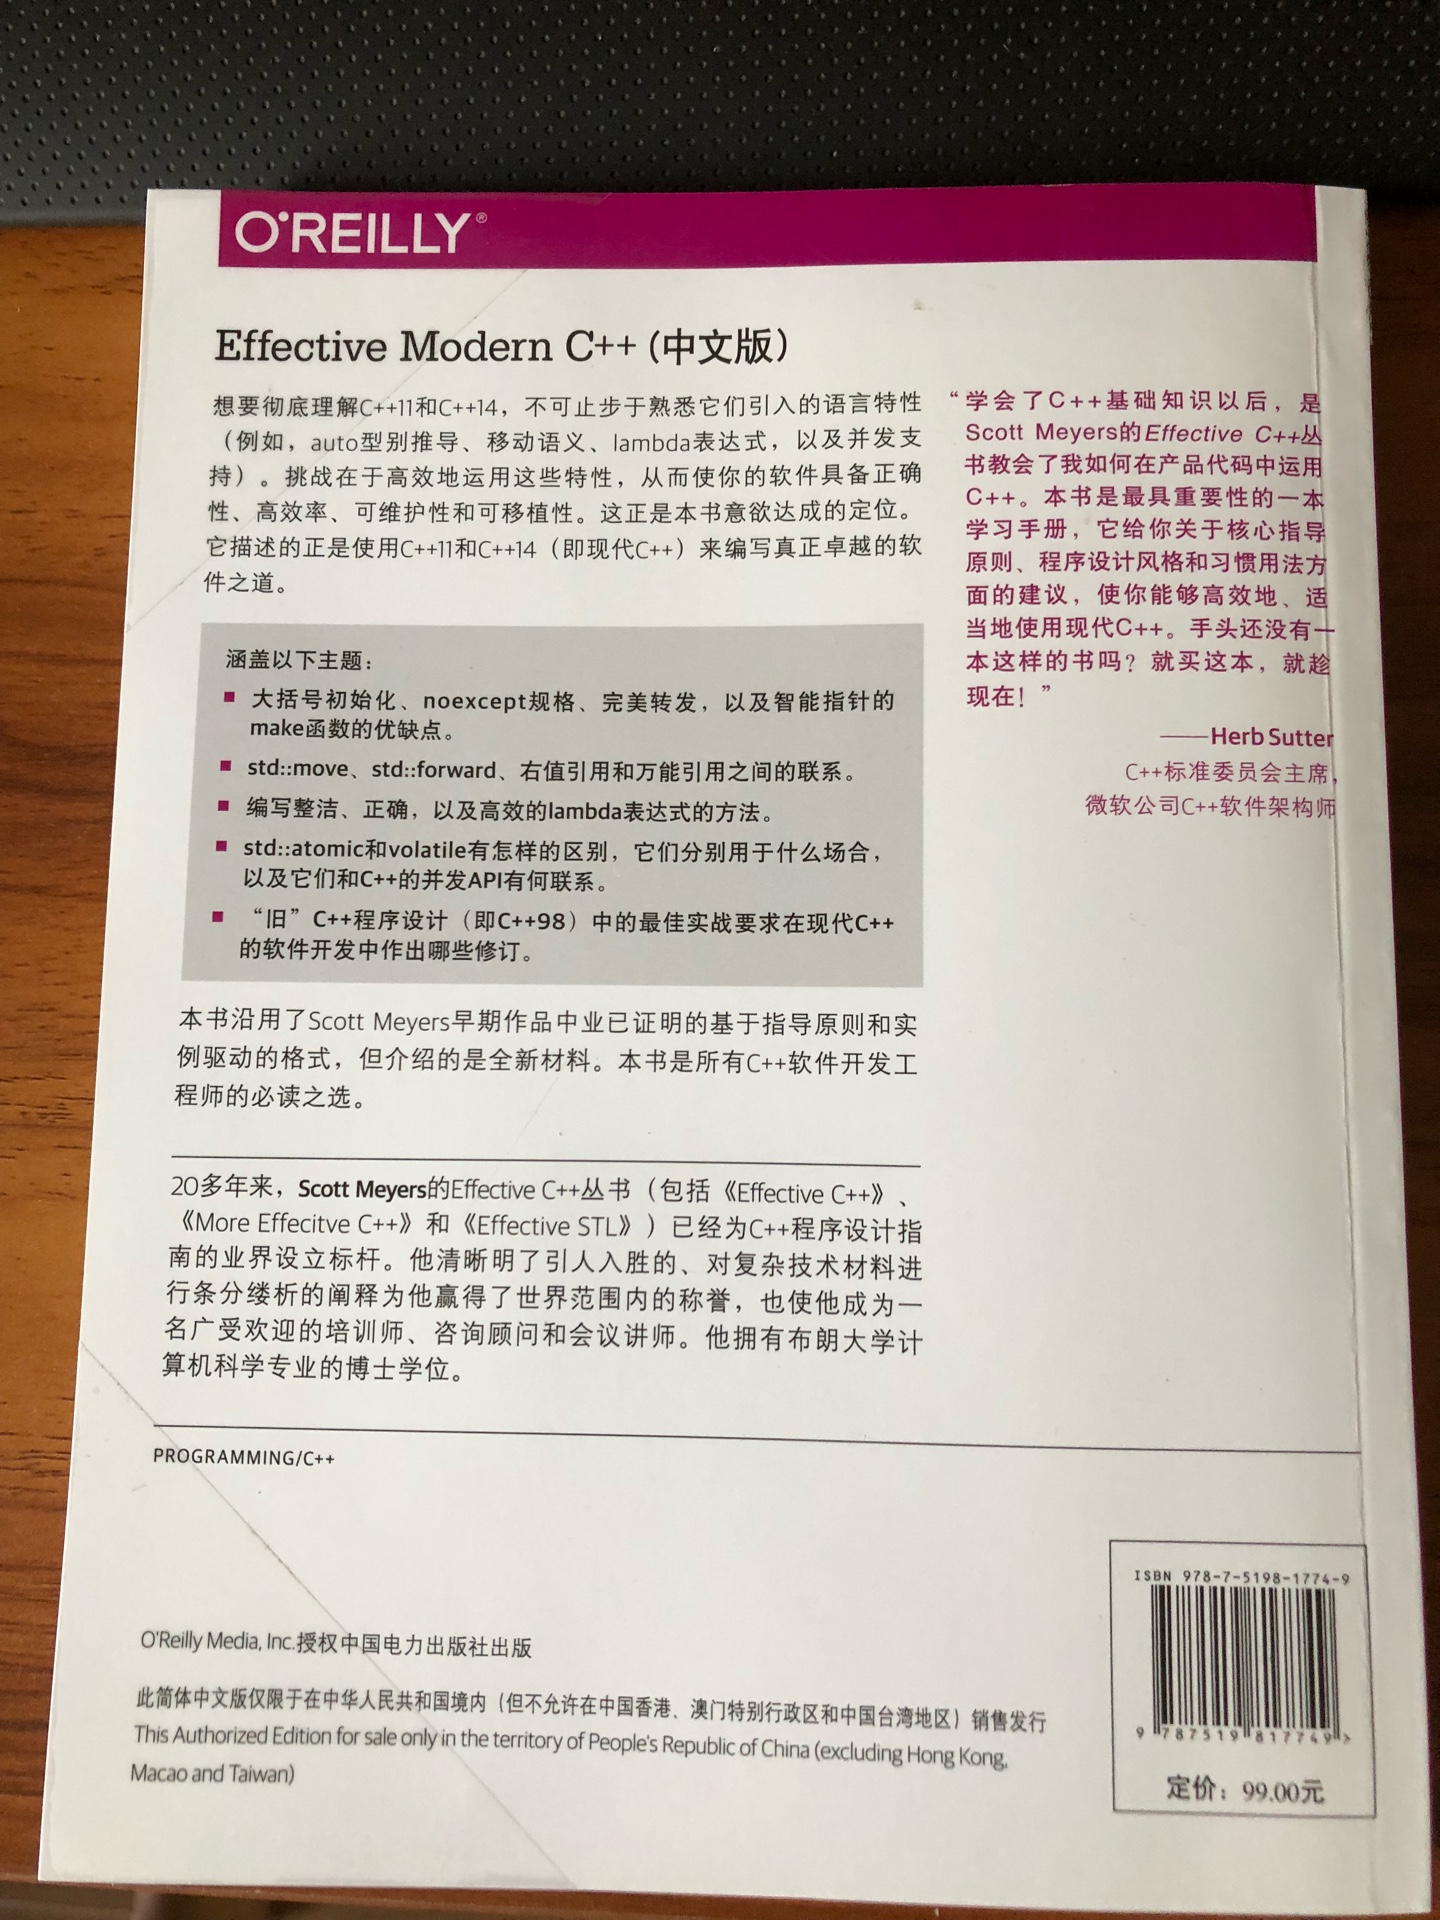 经典大作，终于有中文版了。而且是白色印刷，和原版一个风格。简单看了前几节，翻译质量还不错，偶尔表达问题后期再版应该都会修正。总之非常值得购买。